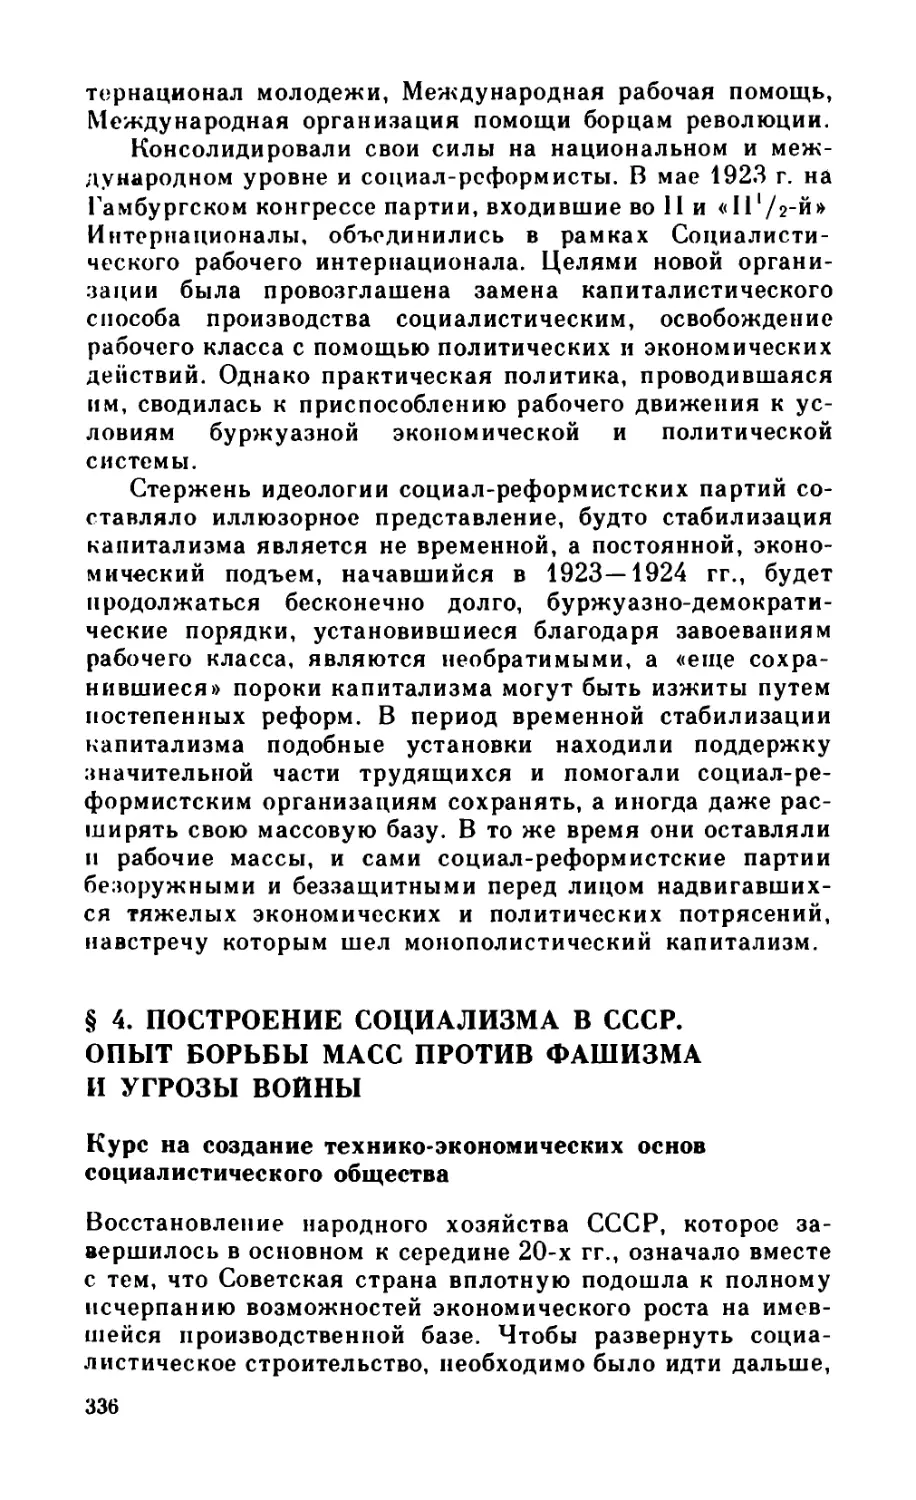 § 4. Построение социализма в СССР. Опыт борьбы масс против фашизма и угрозы войны